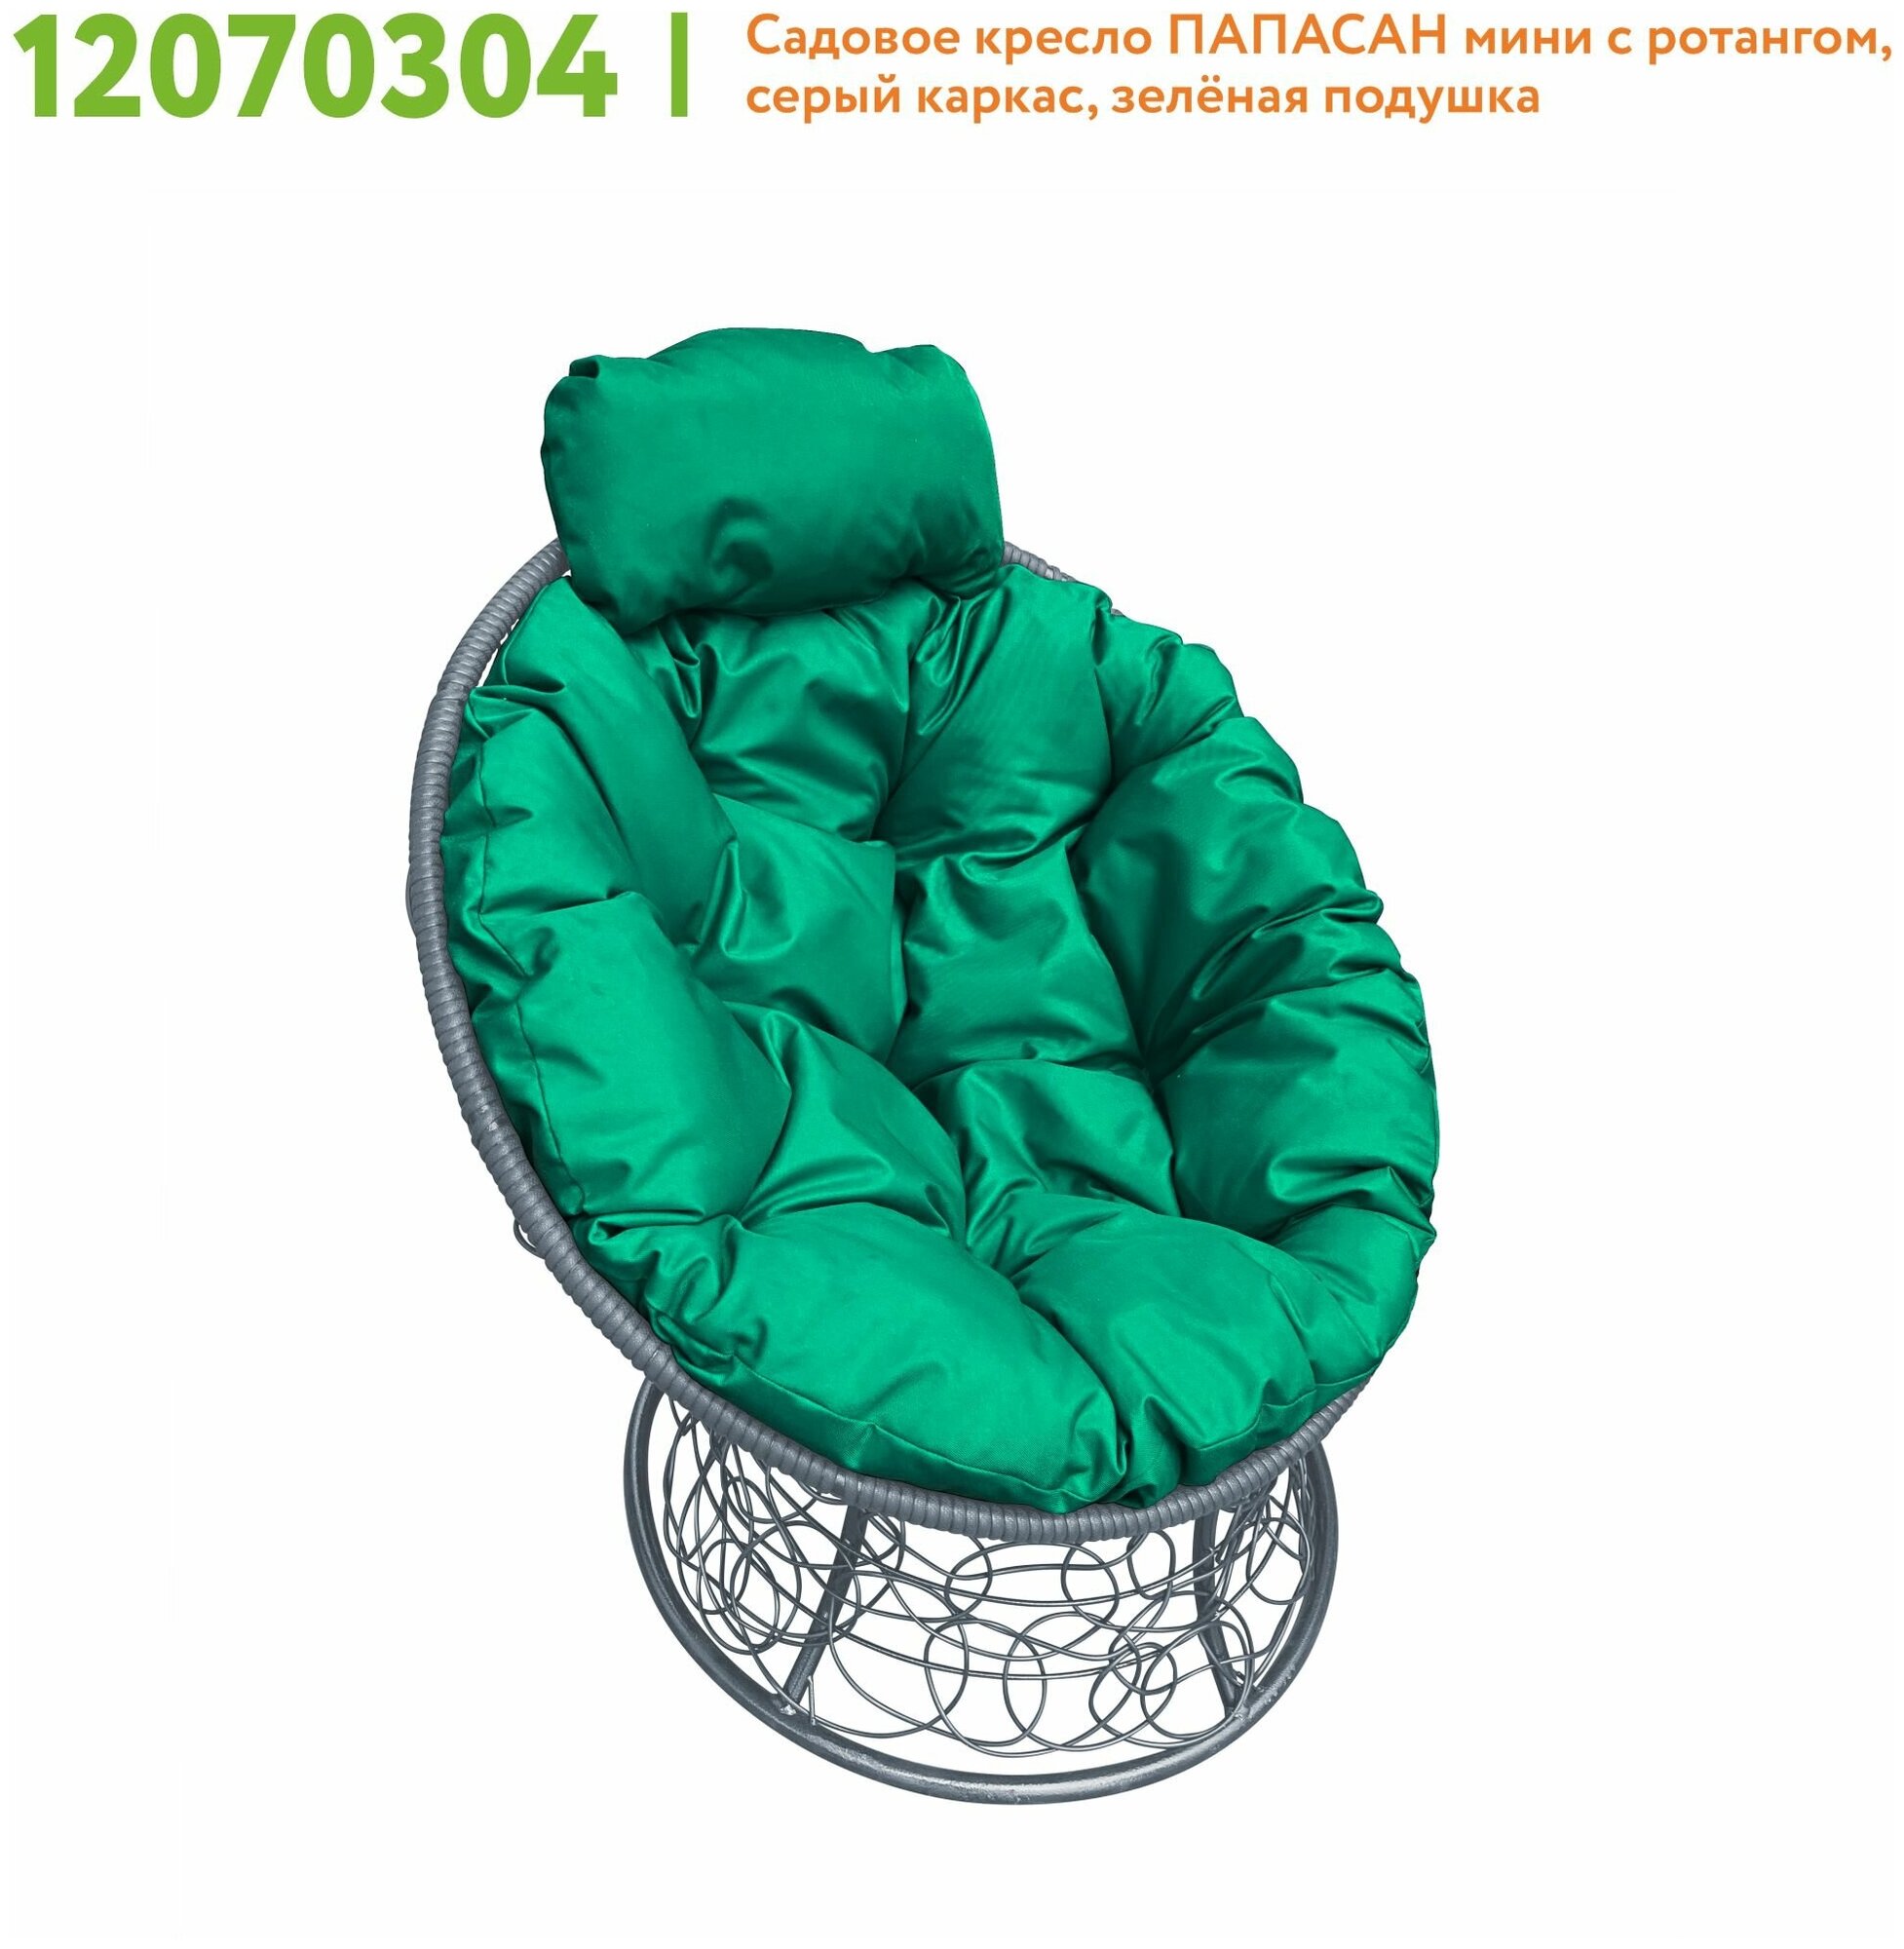 Кресло m-group папасан мини ротанг серое, зелёная подушка - фотография № 5